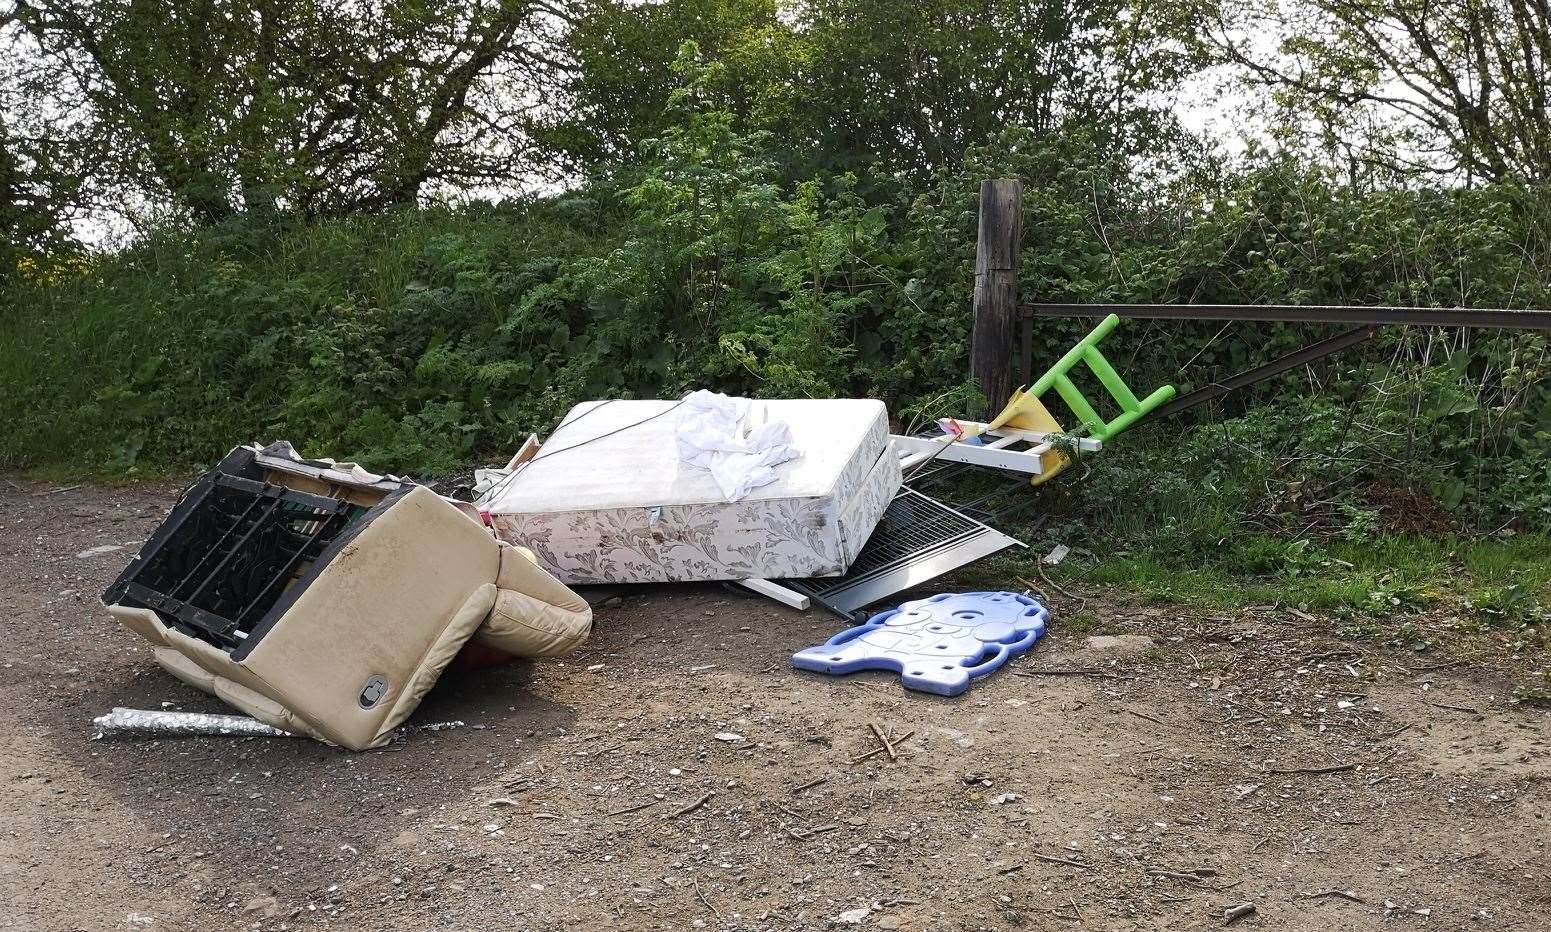 Steven Crowley dumped waste down Burberry Lane in Leeds, near Maidstone